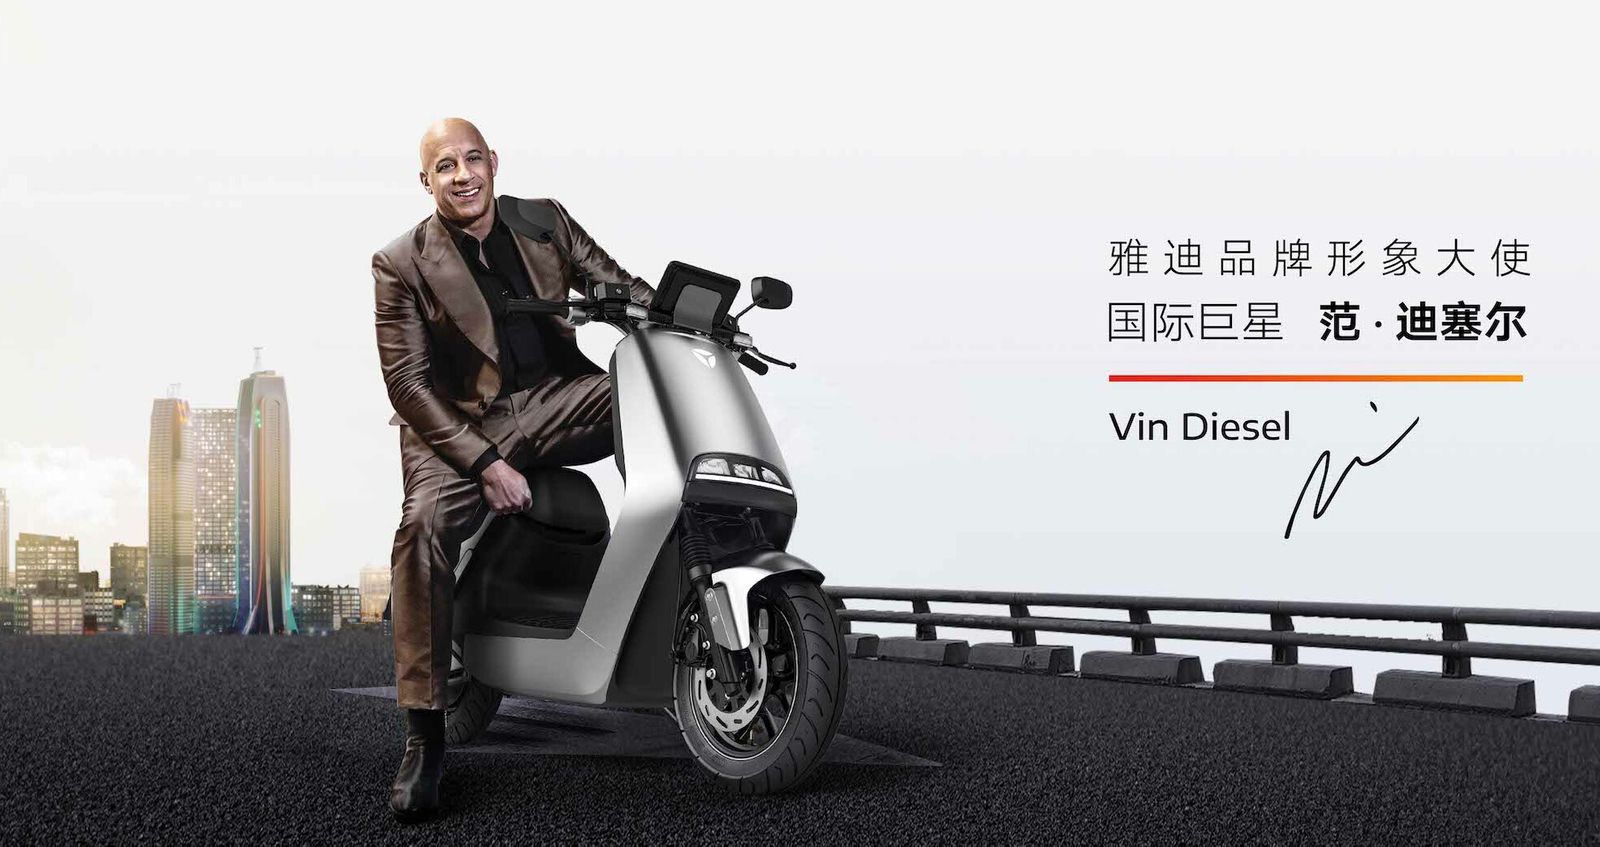 Vin Diesel nem egy dízel járművet reklámoz